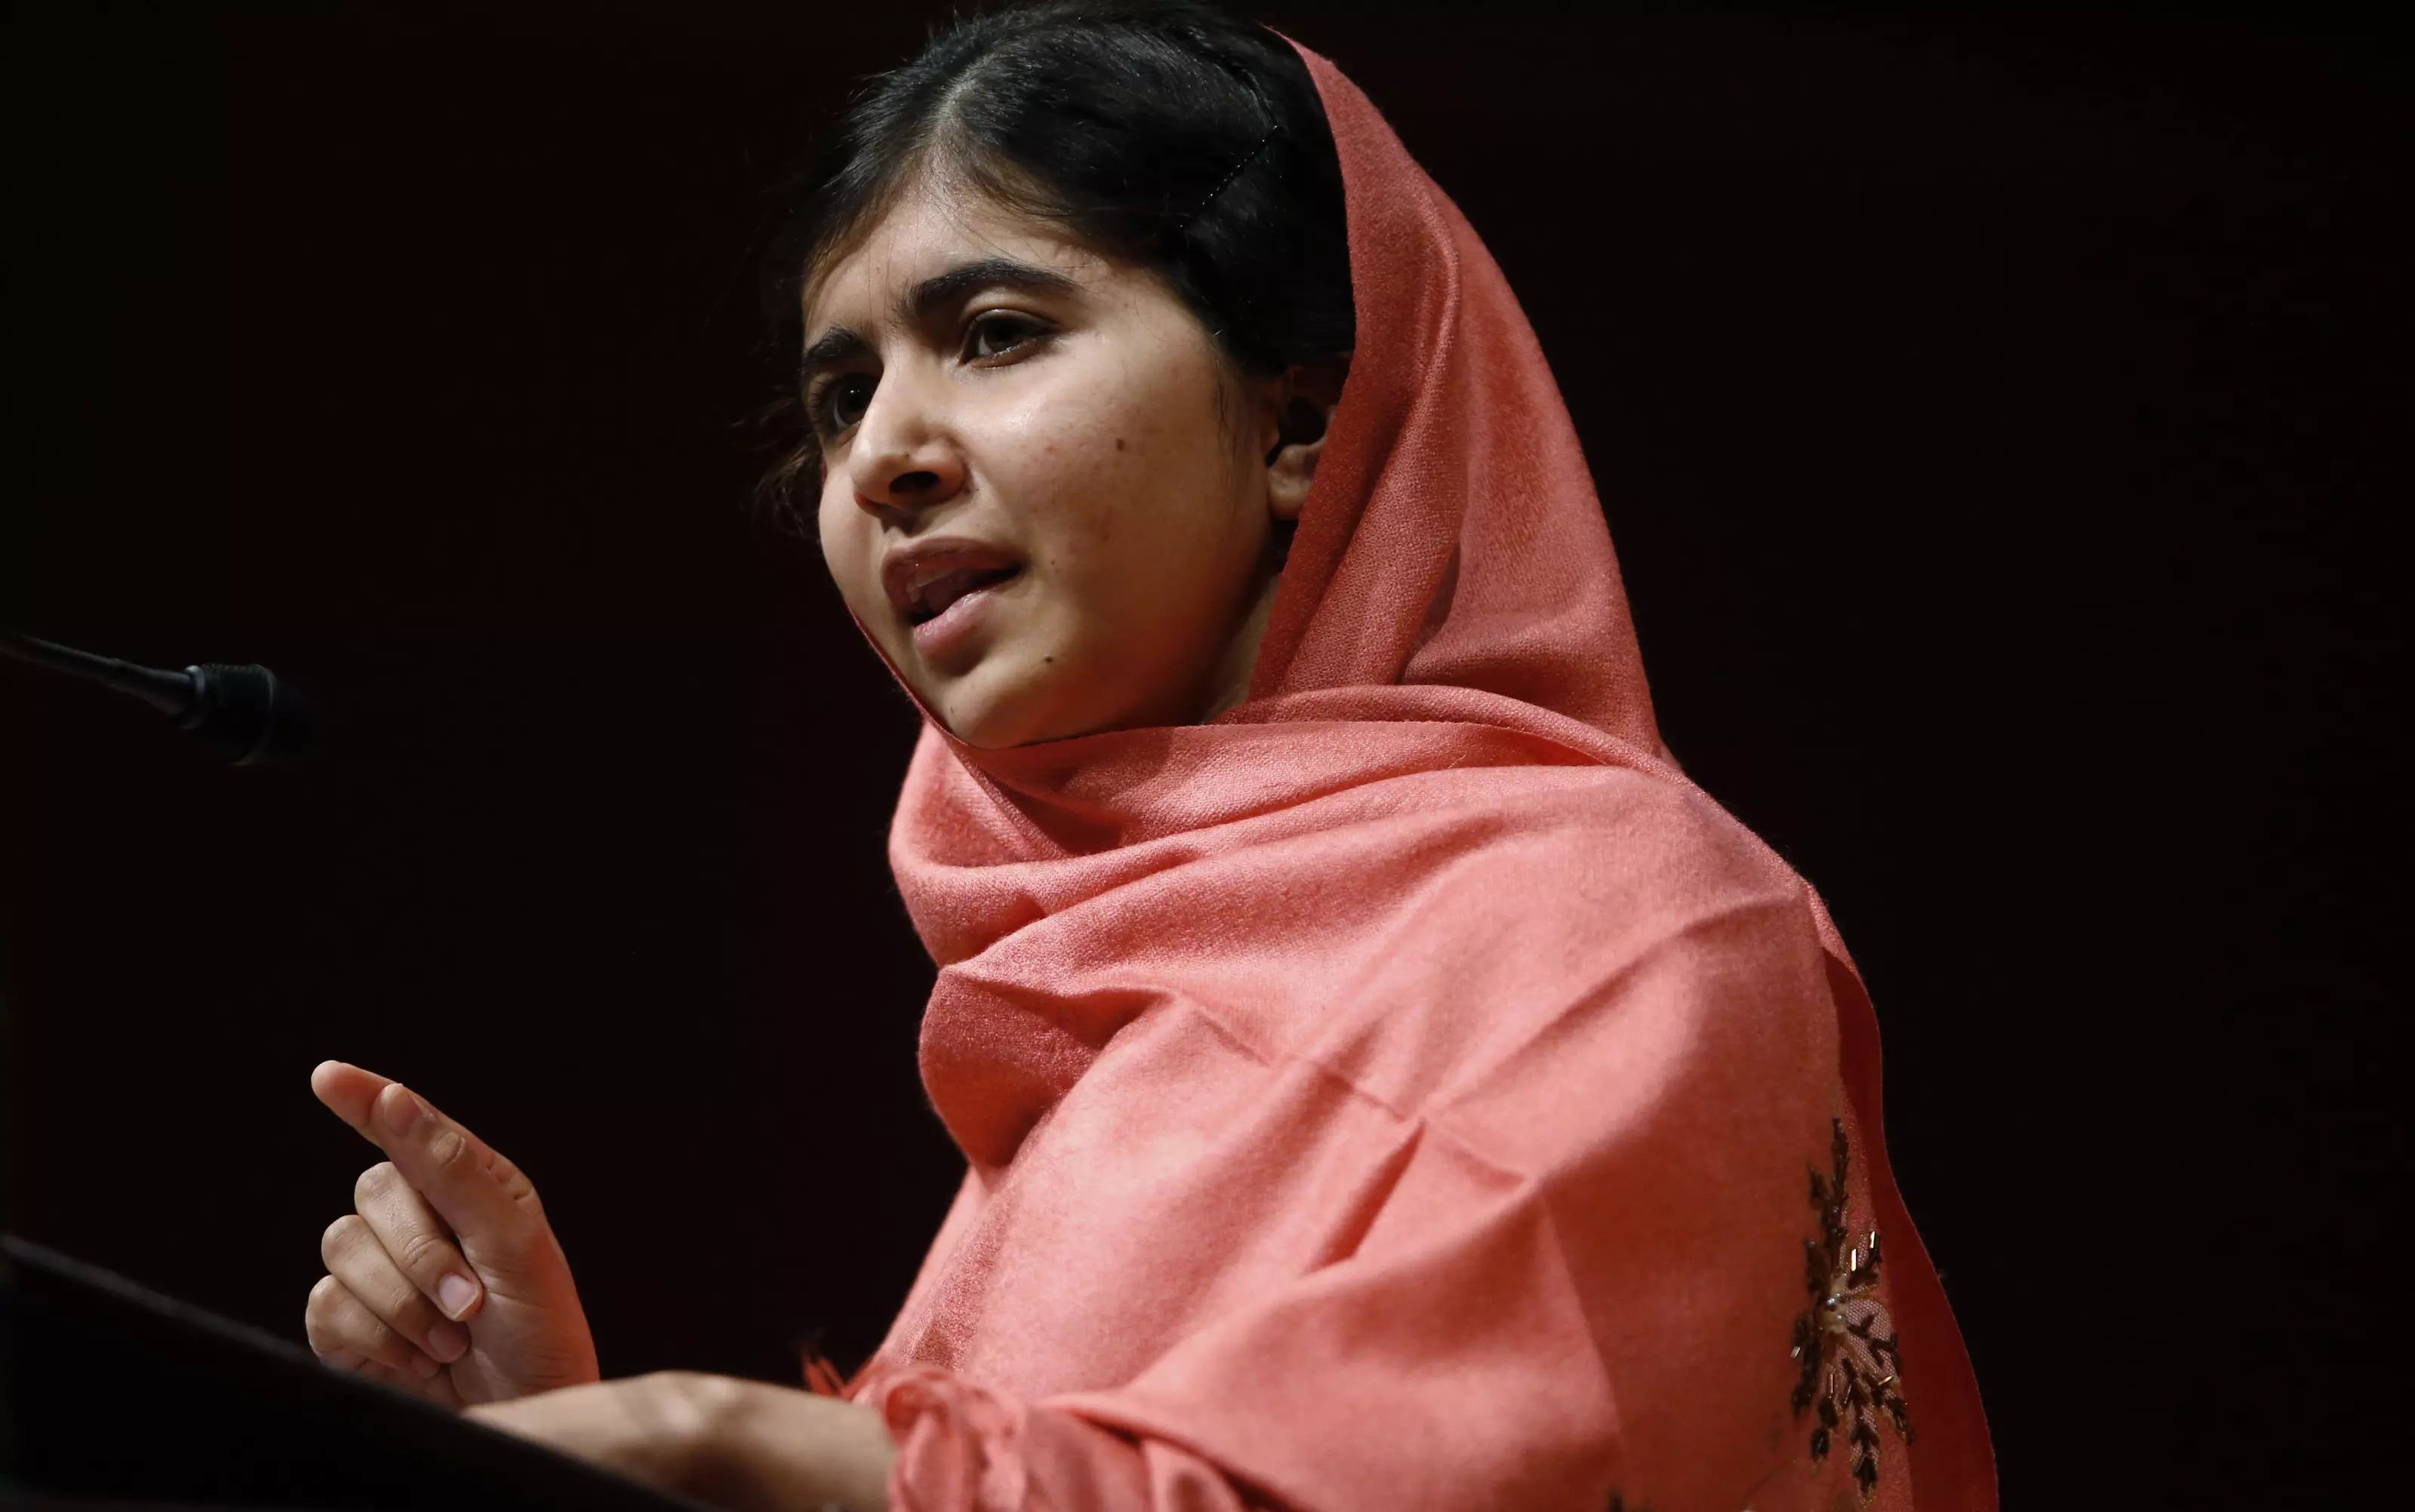 מללה יוספזאי מפקיסטן. הייתה מועמדת לפרס נובל לשלום